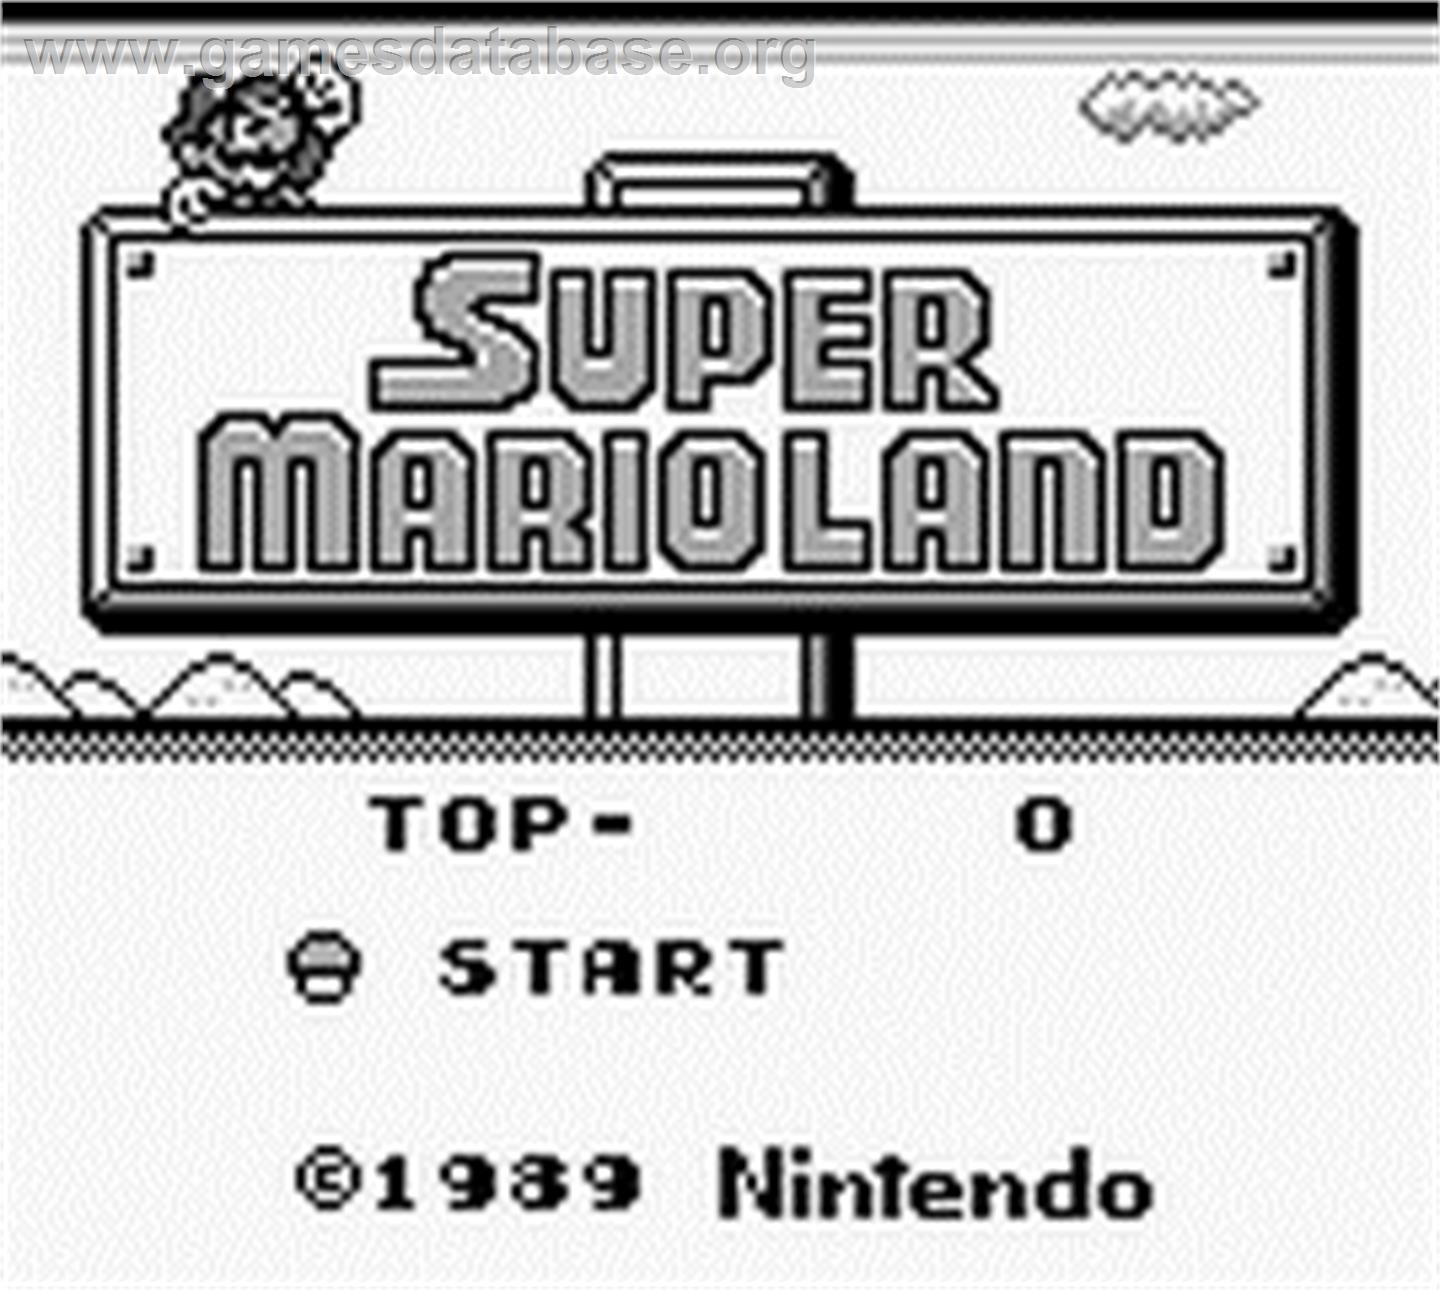 Super Mario Land - Nintendo Game Boy - Artwork - Title Screen